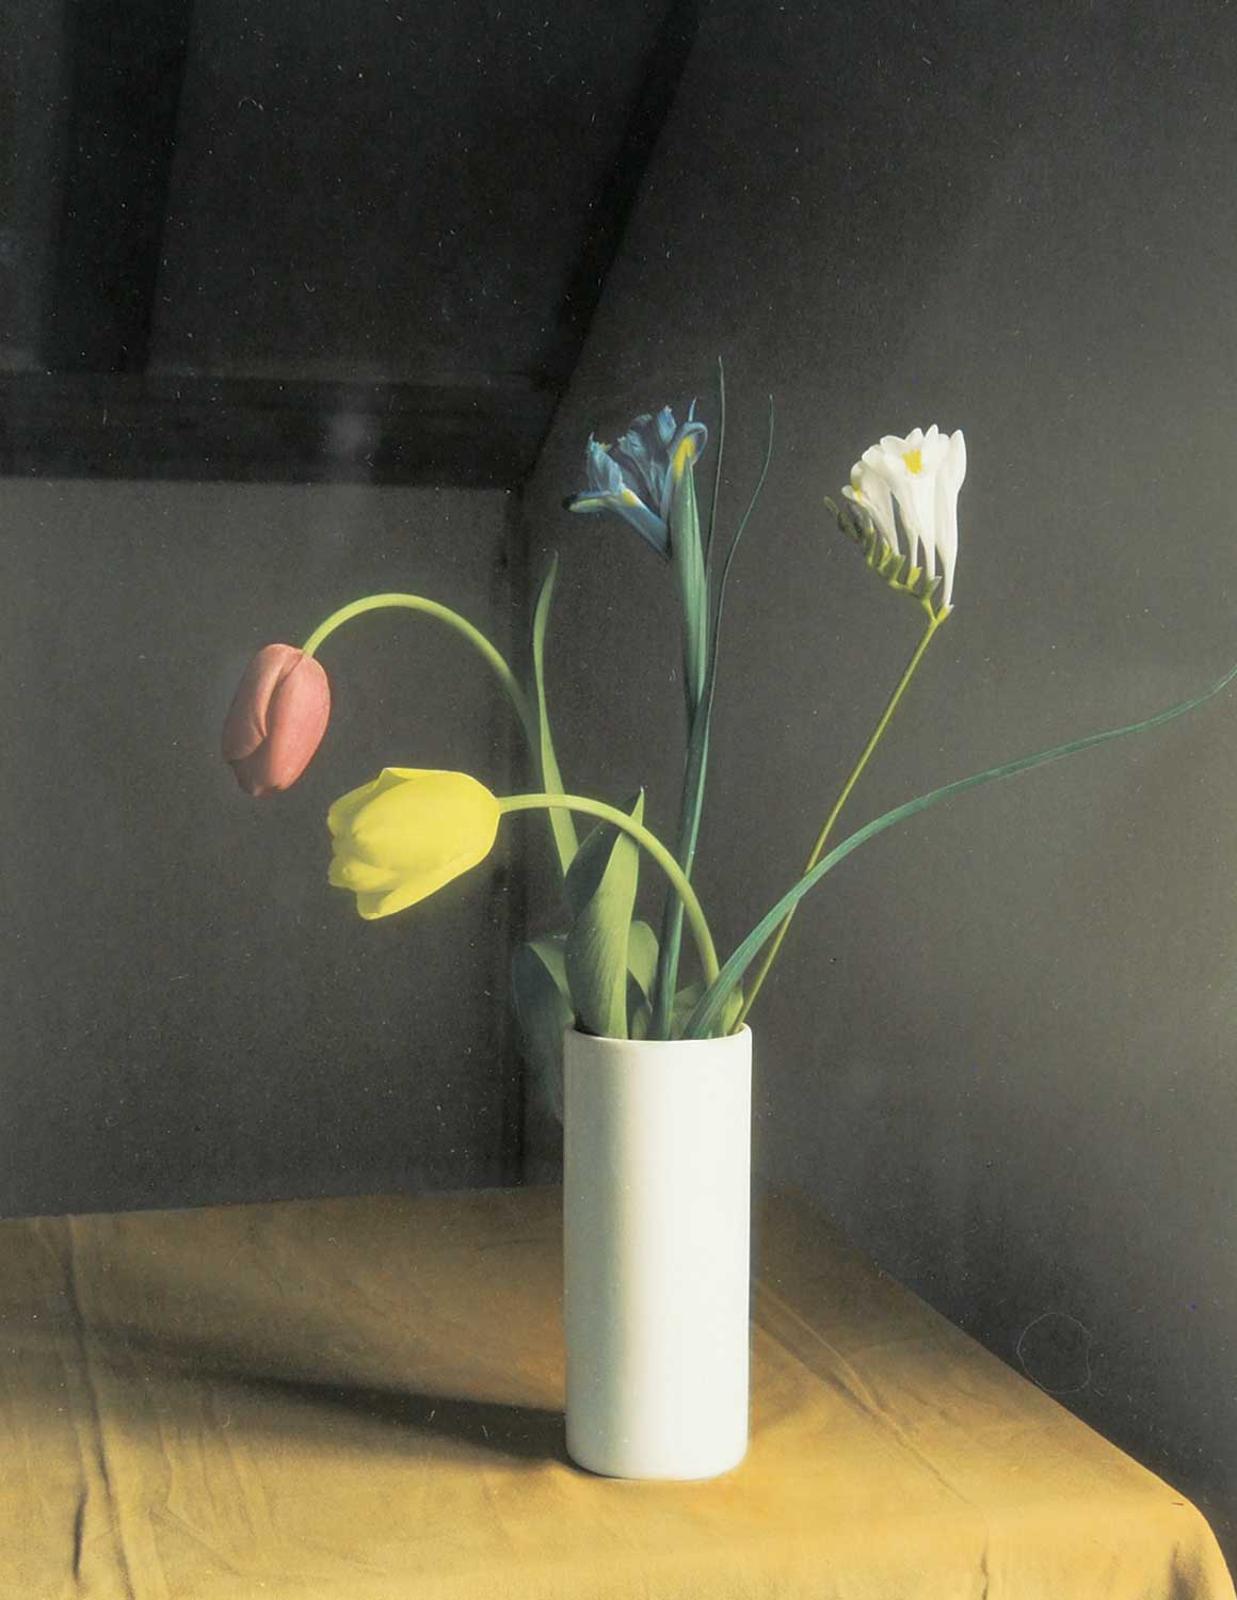 James Daubney - Untitled - Vase of Tulips